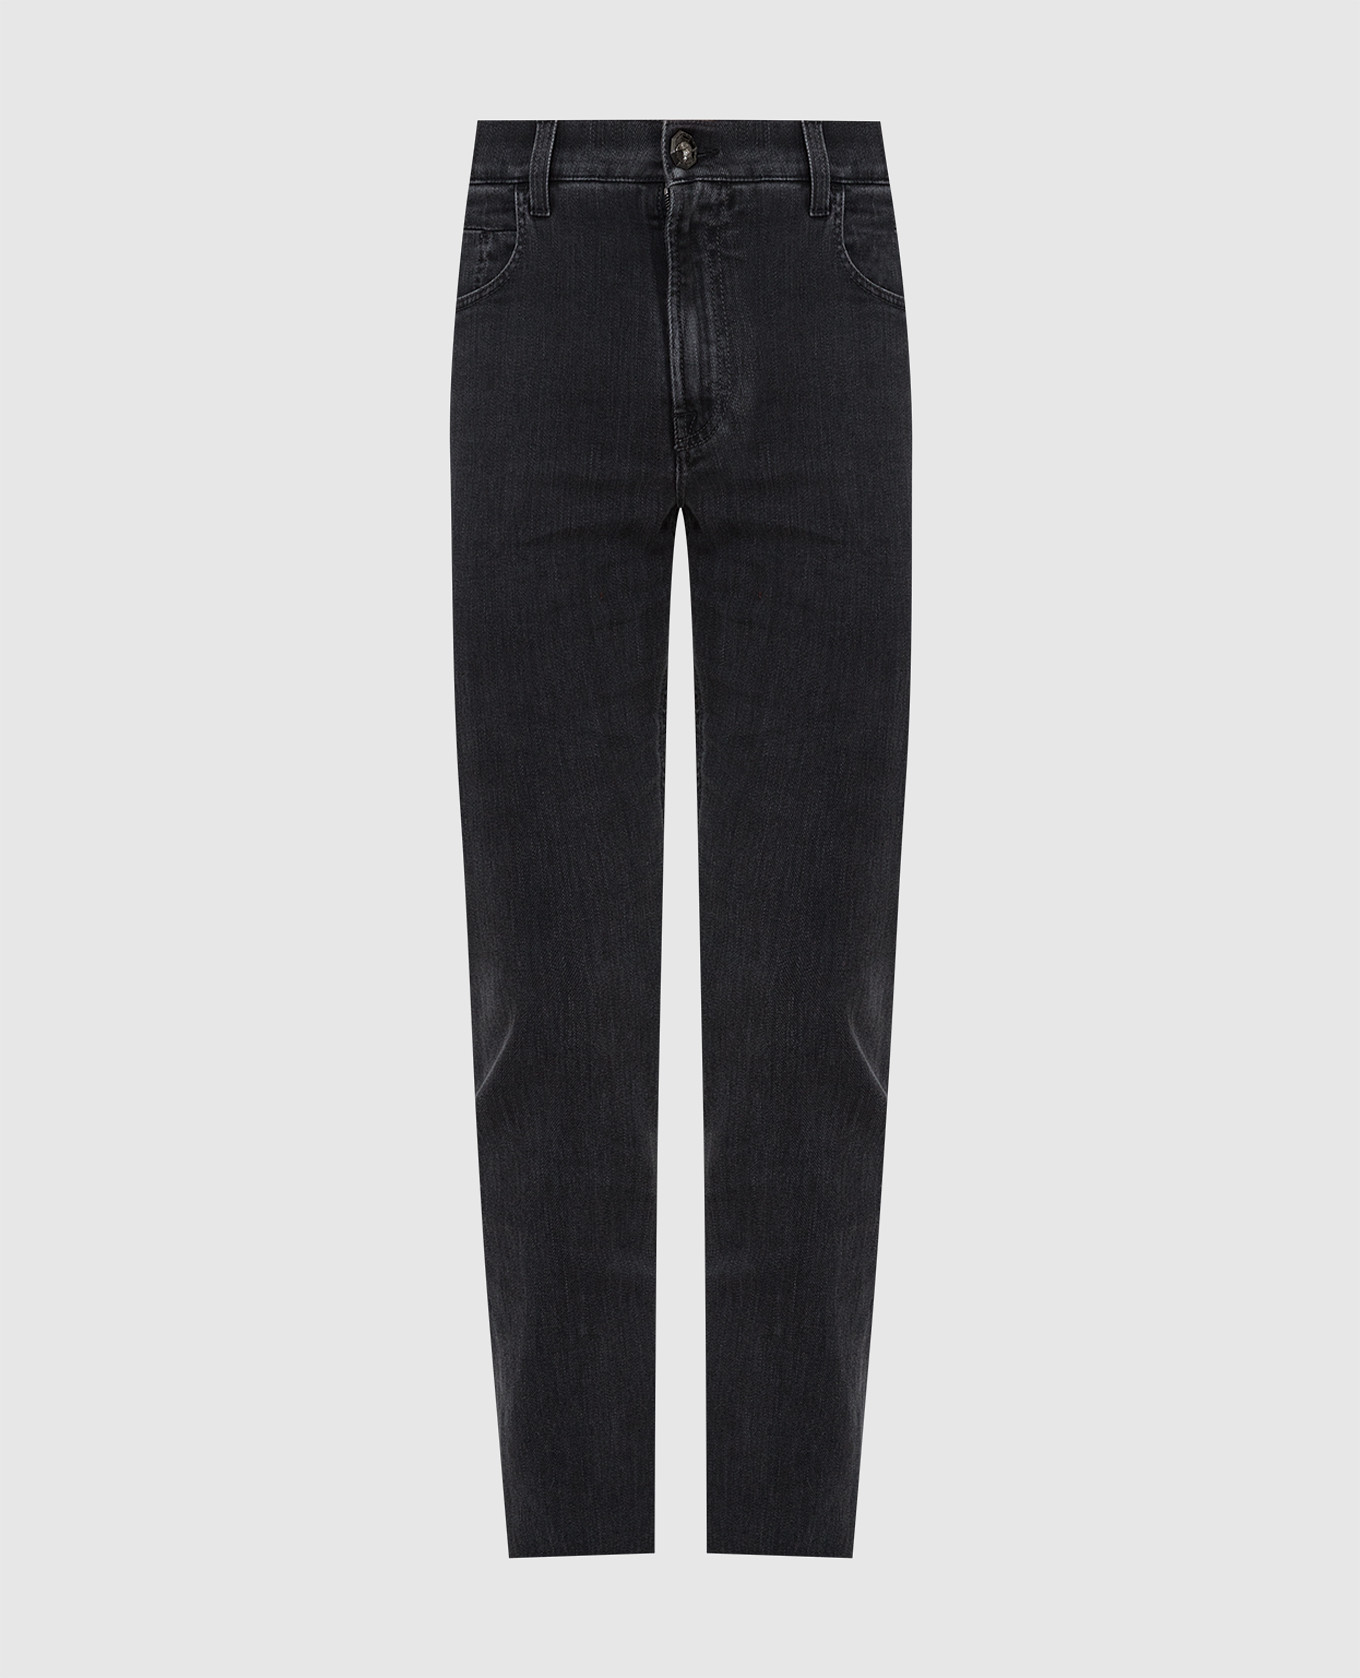 Темно-серые джинсы с вышивкой эмблемы Stefano Ricci